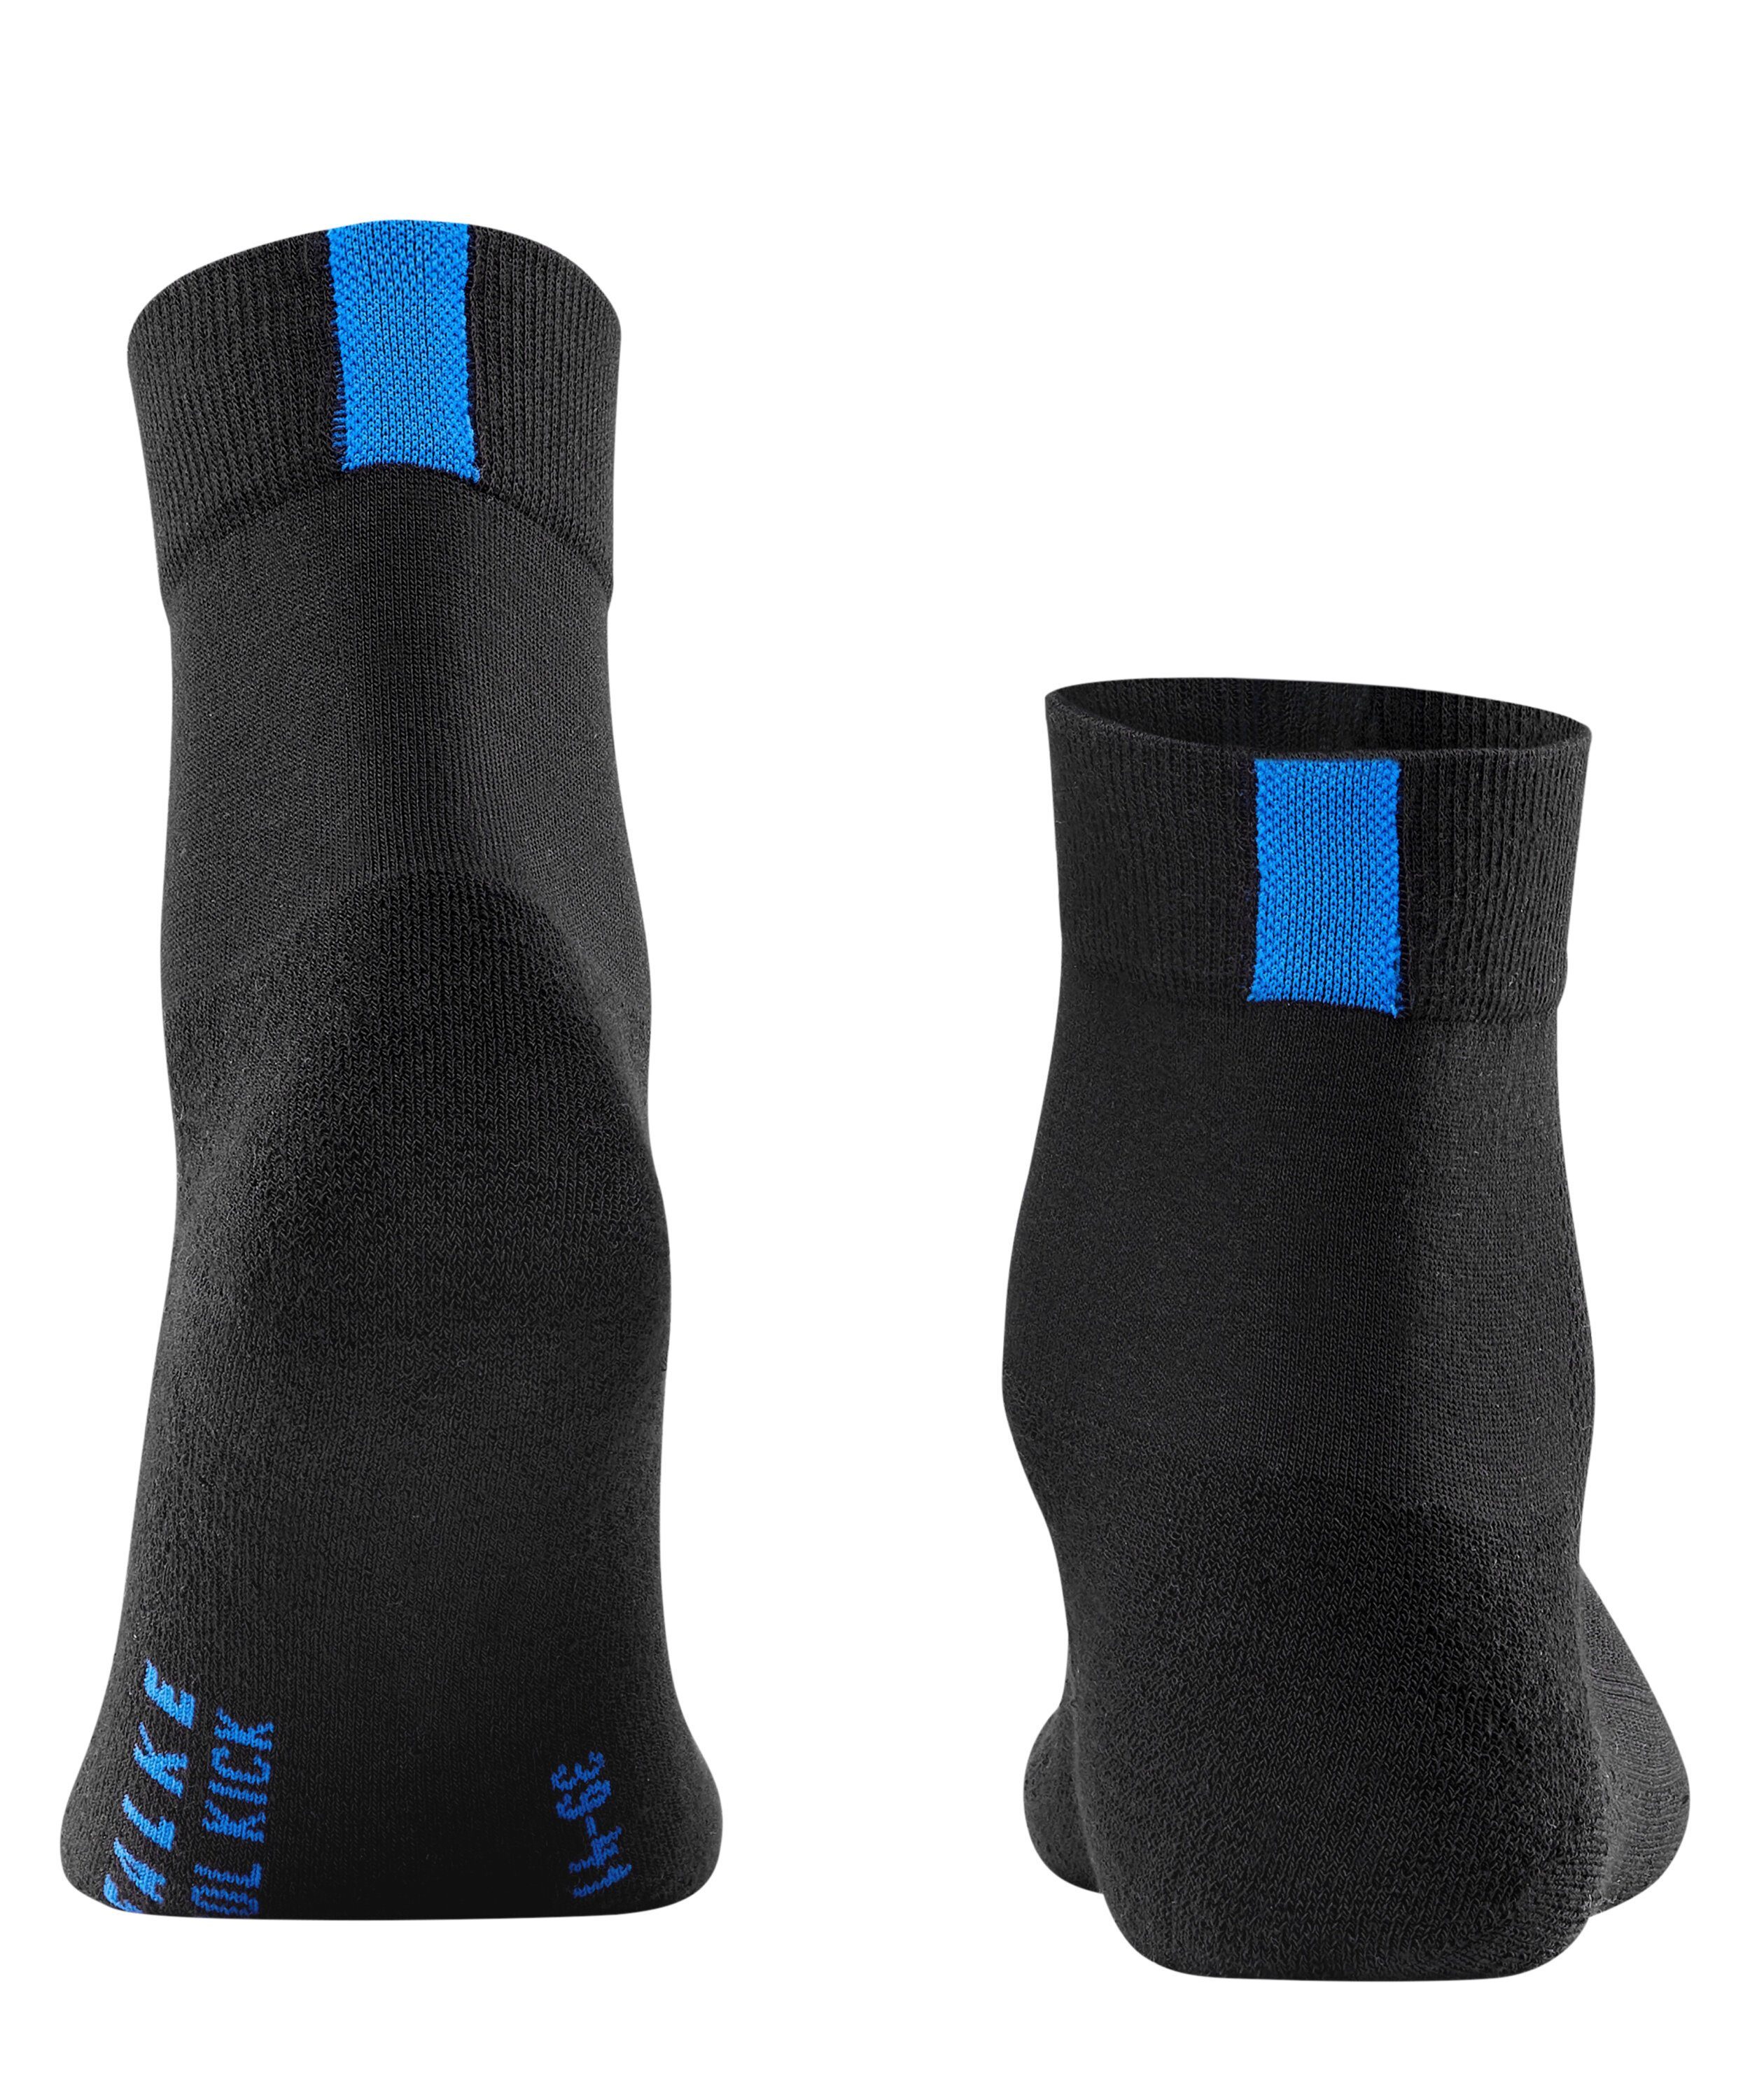 Cool (3000) FALKE black (1-Paar) Socken Kick